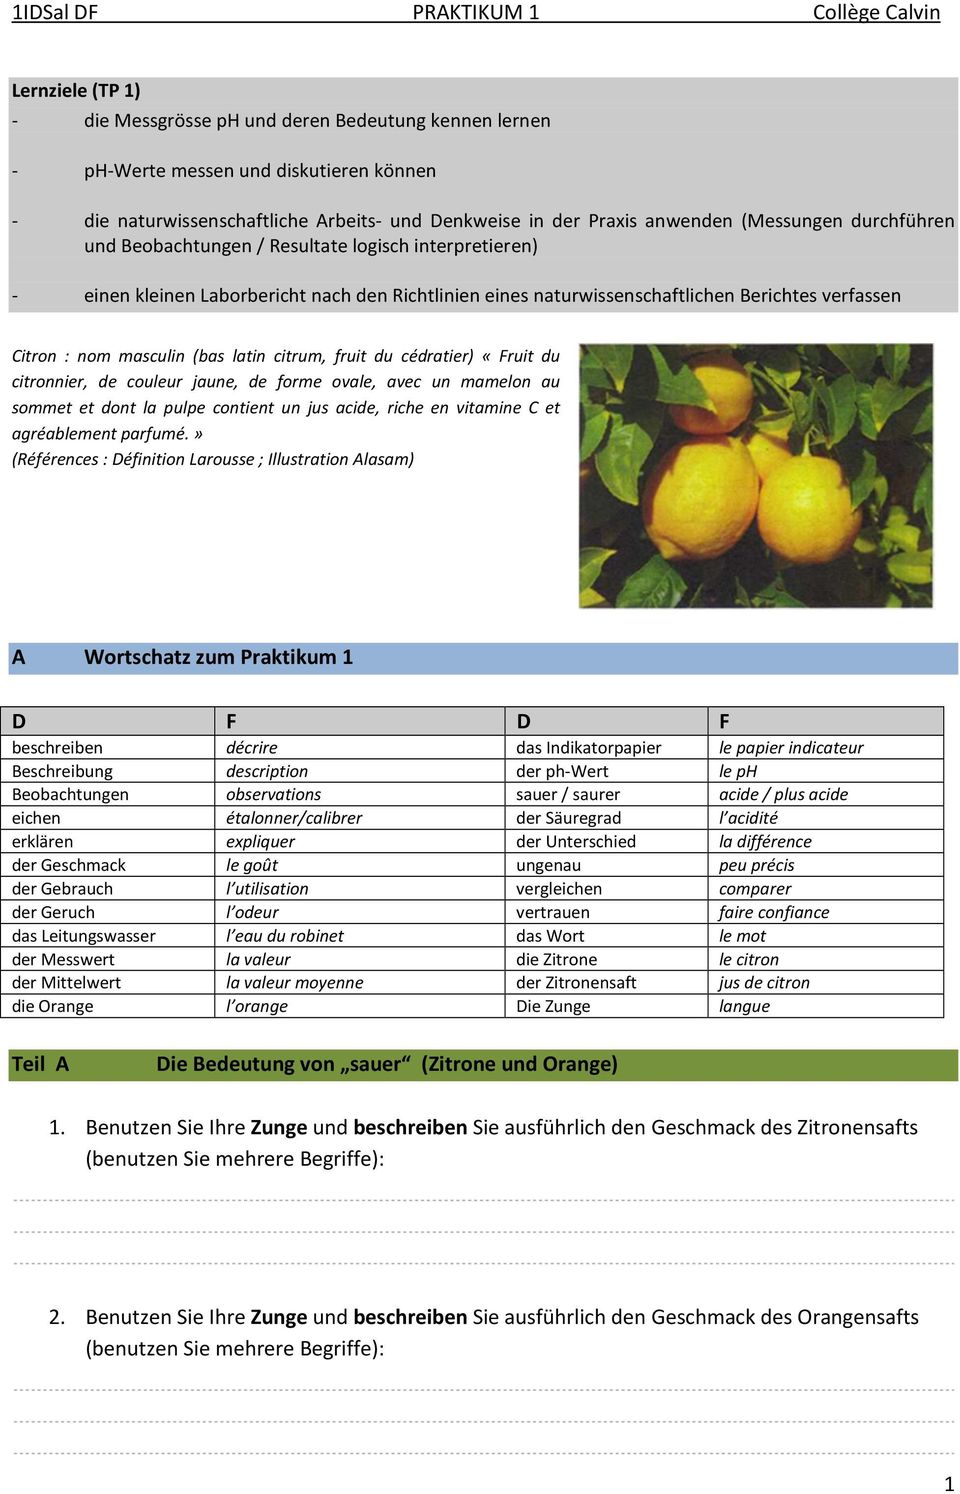 citrum, fruit du cédratier) «Fruit du citronnier, de couleur jaune, de forme ovale, avec un mamelon au sommet et dont la pulpe contient un jus acide, riche en vitamine C et agréablement parfumé.